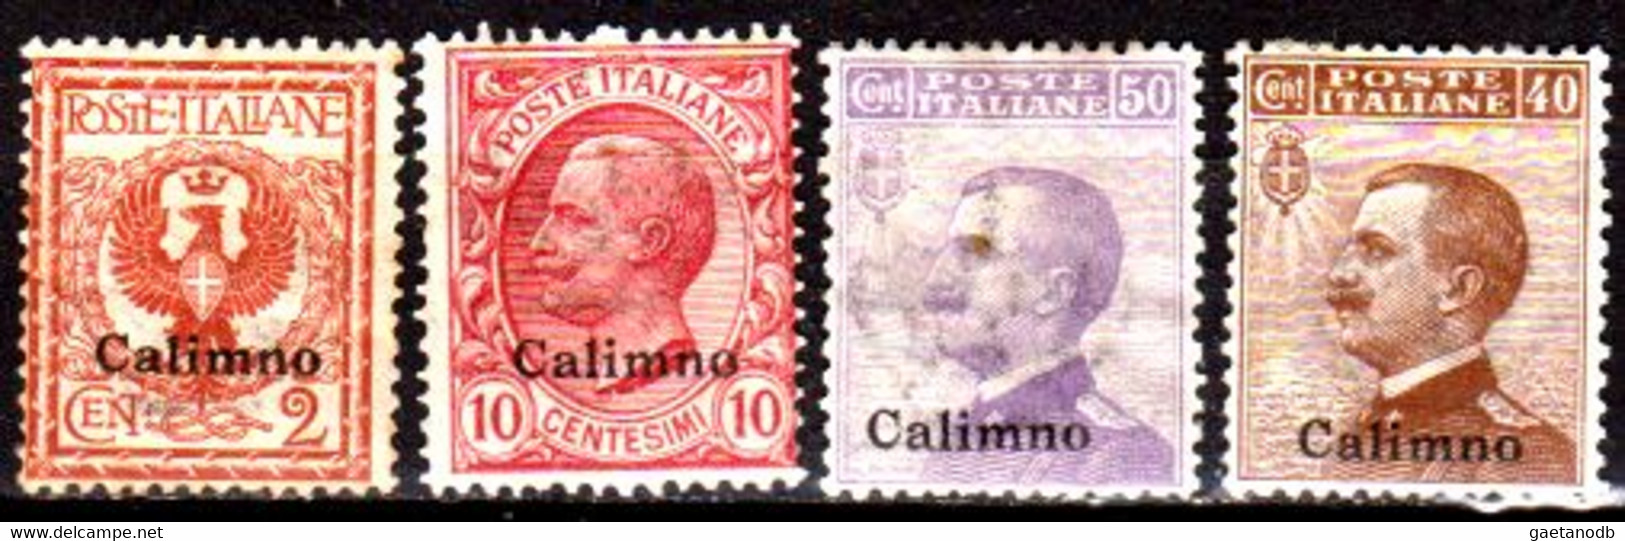 Italia-G 1101 - Colonie Italiane - Egeo: Calino 1912 (++/+) MNH/Hinged - Qualità A Vostro Giudizio. - Egeo (Calino)